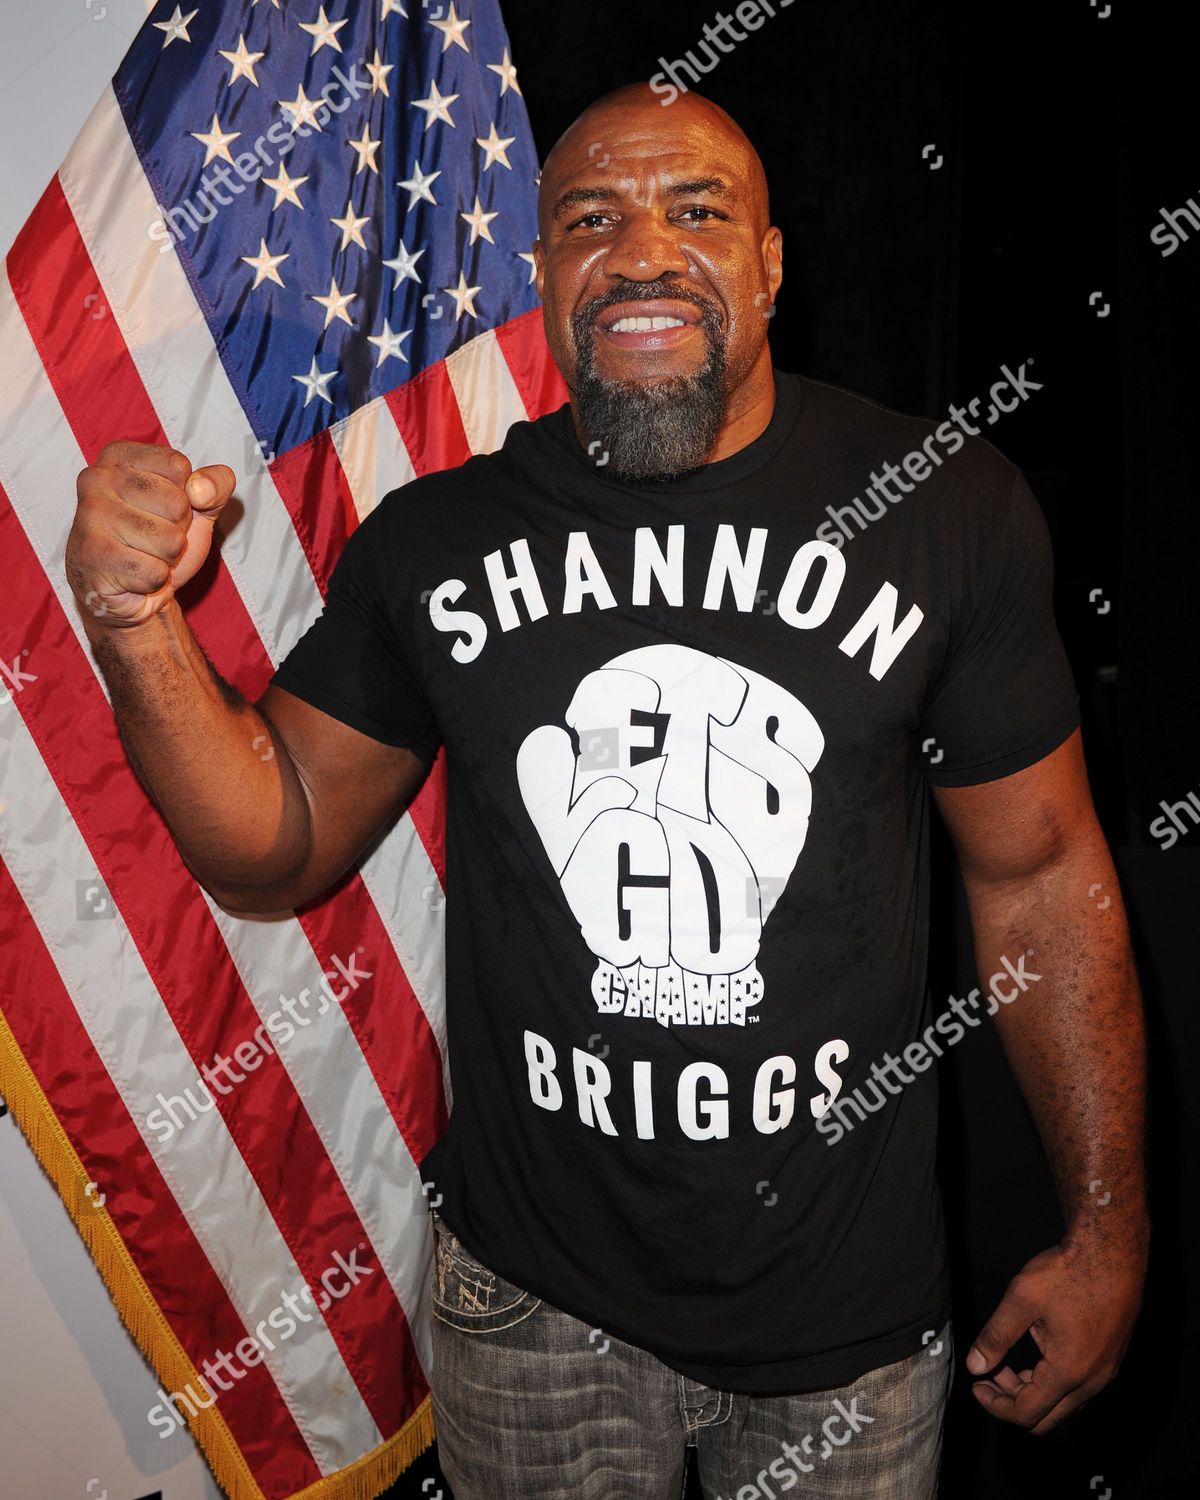 shannon briggs shirt